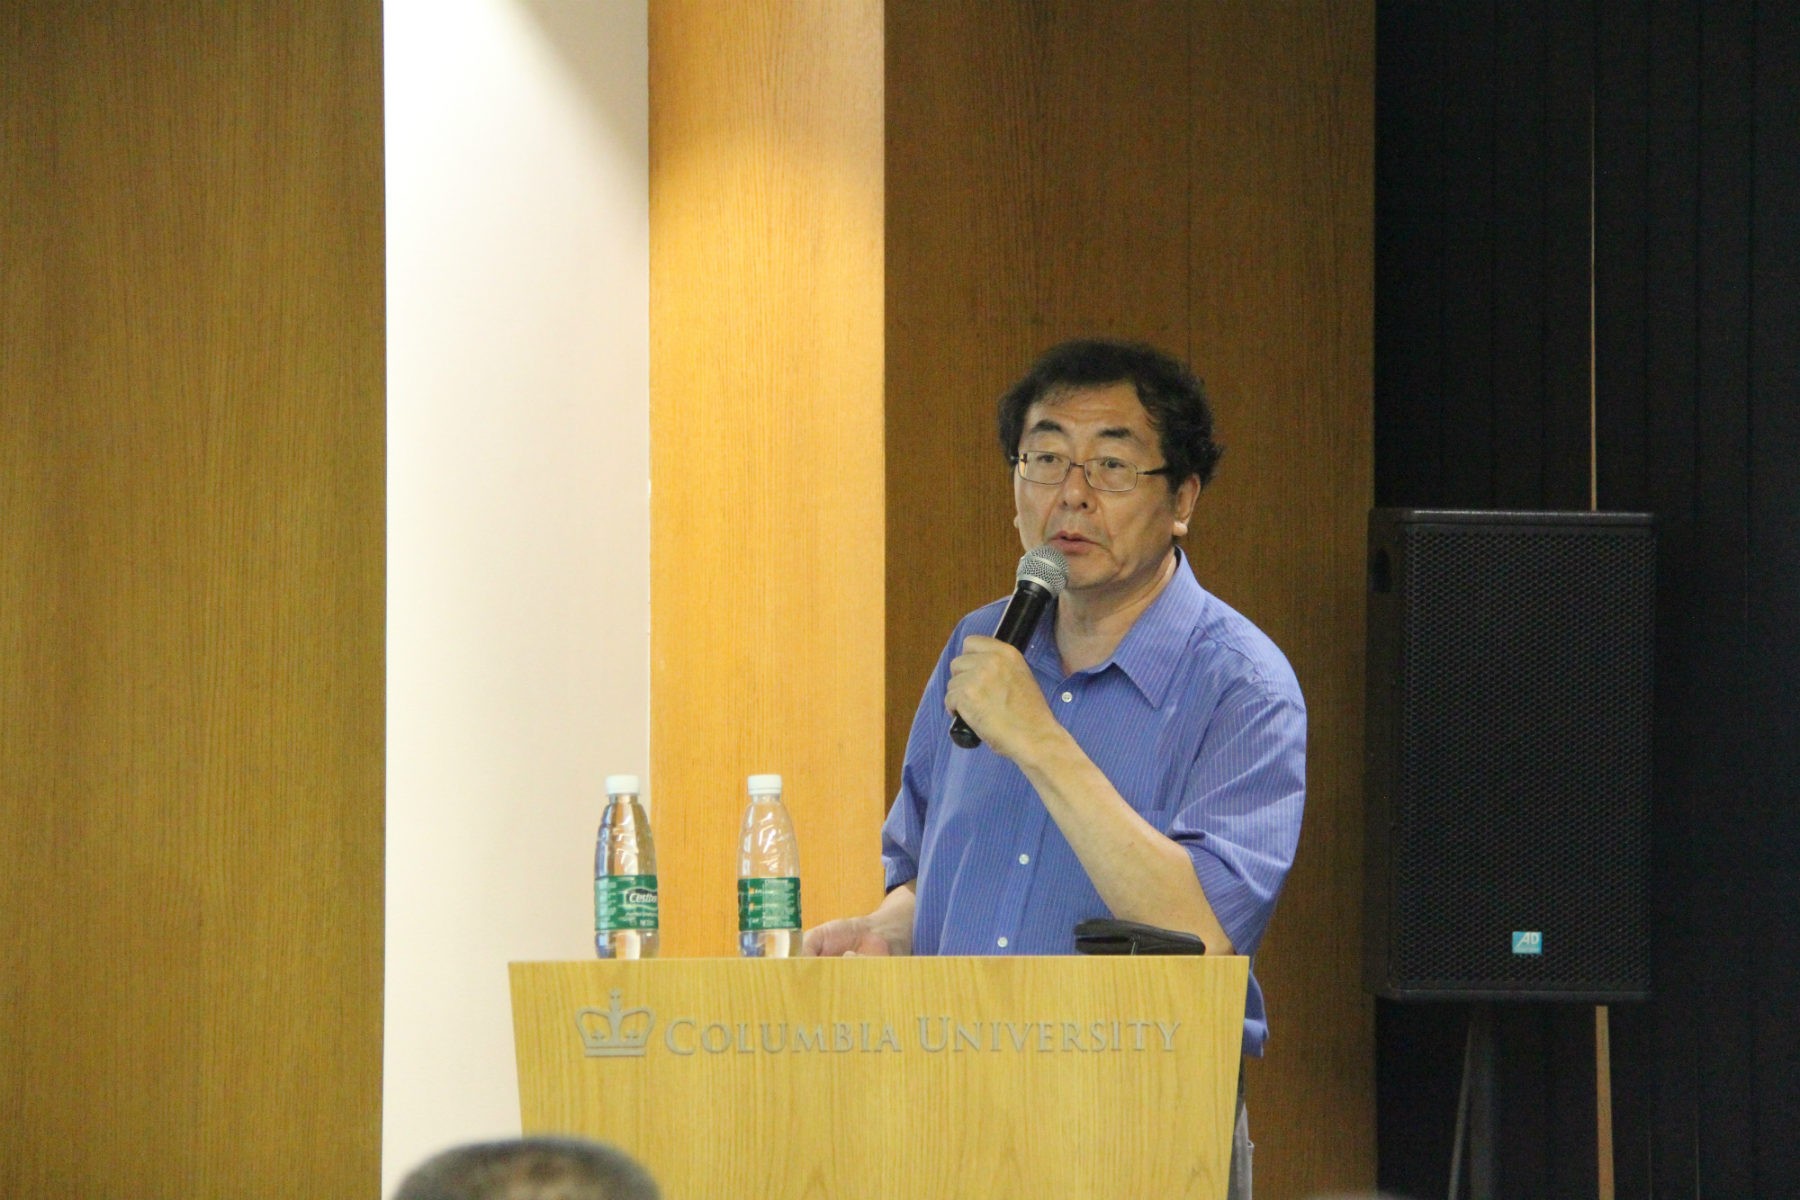 Professor Jingguang Chen